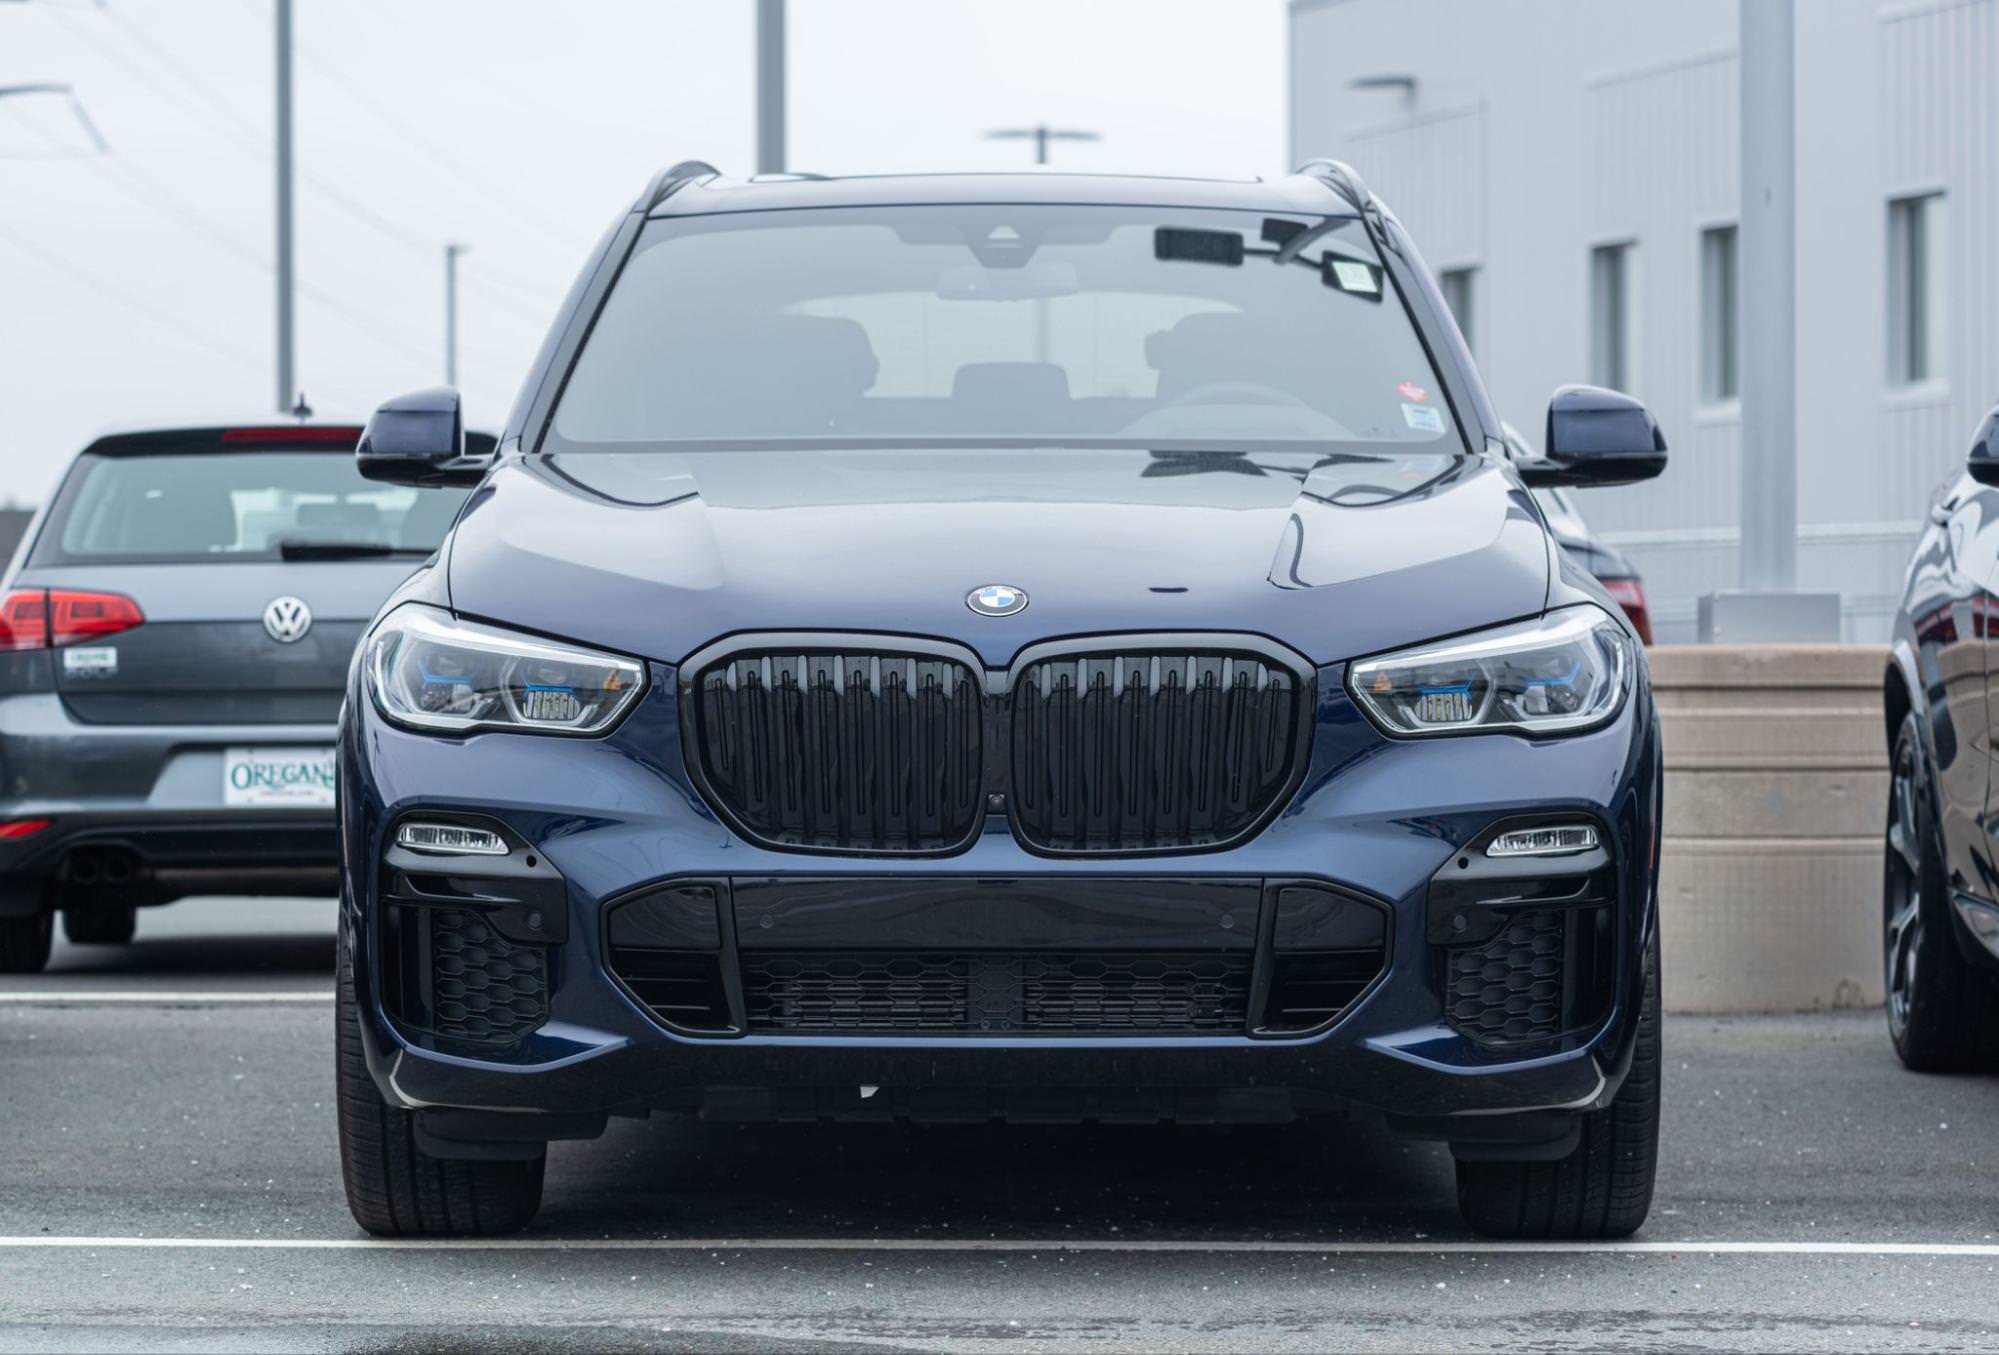 To zdjęcie przedstawia widok z przodu SUV-a BMW X5. Pojazd jest koloru ciemnoniebieskiego lub czarnego i stoi na czymś, co przypomina parking. Zdjęcie koncentruje się na przodzie samochodu, podkreślając jego dużą atrapę chłodnicy.